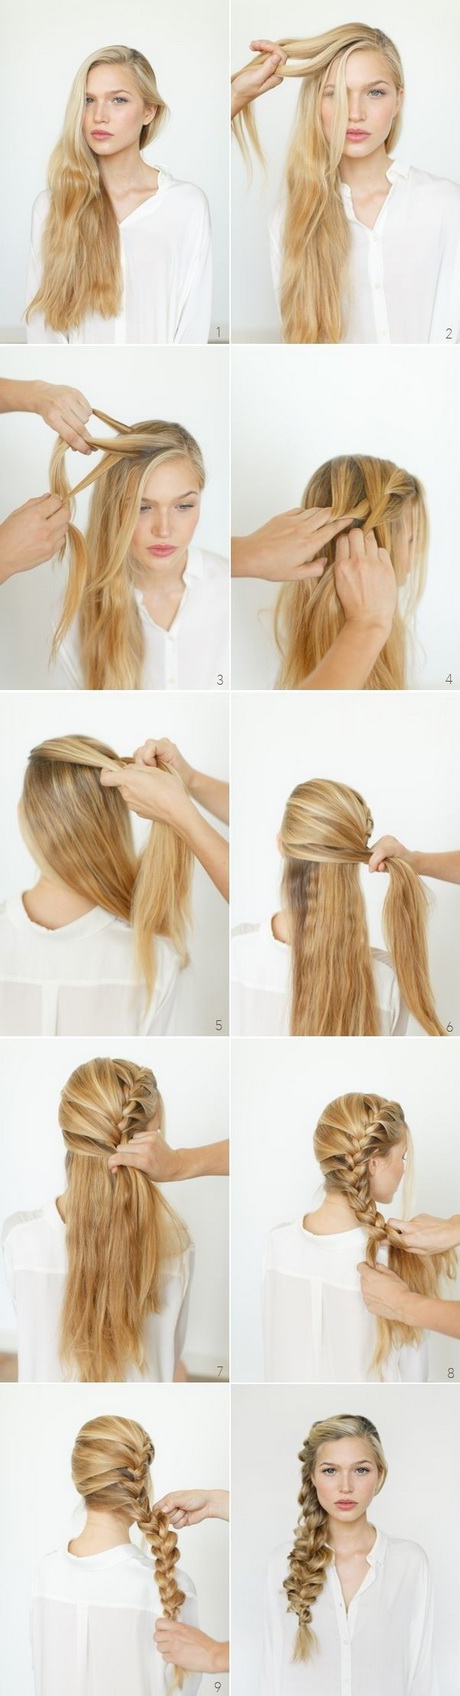 Lijepe ideje za kosu za dugu kosu